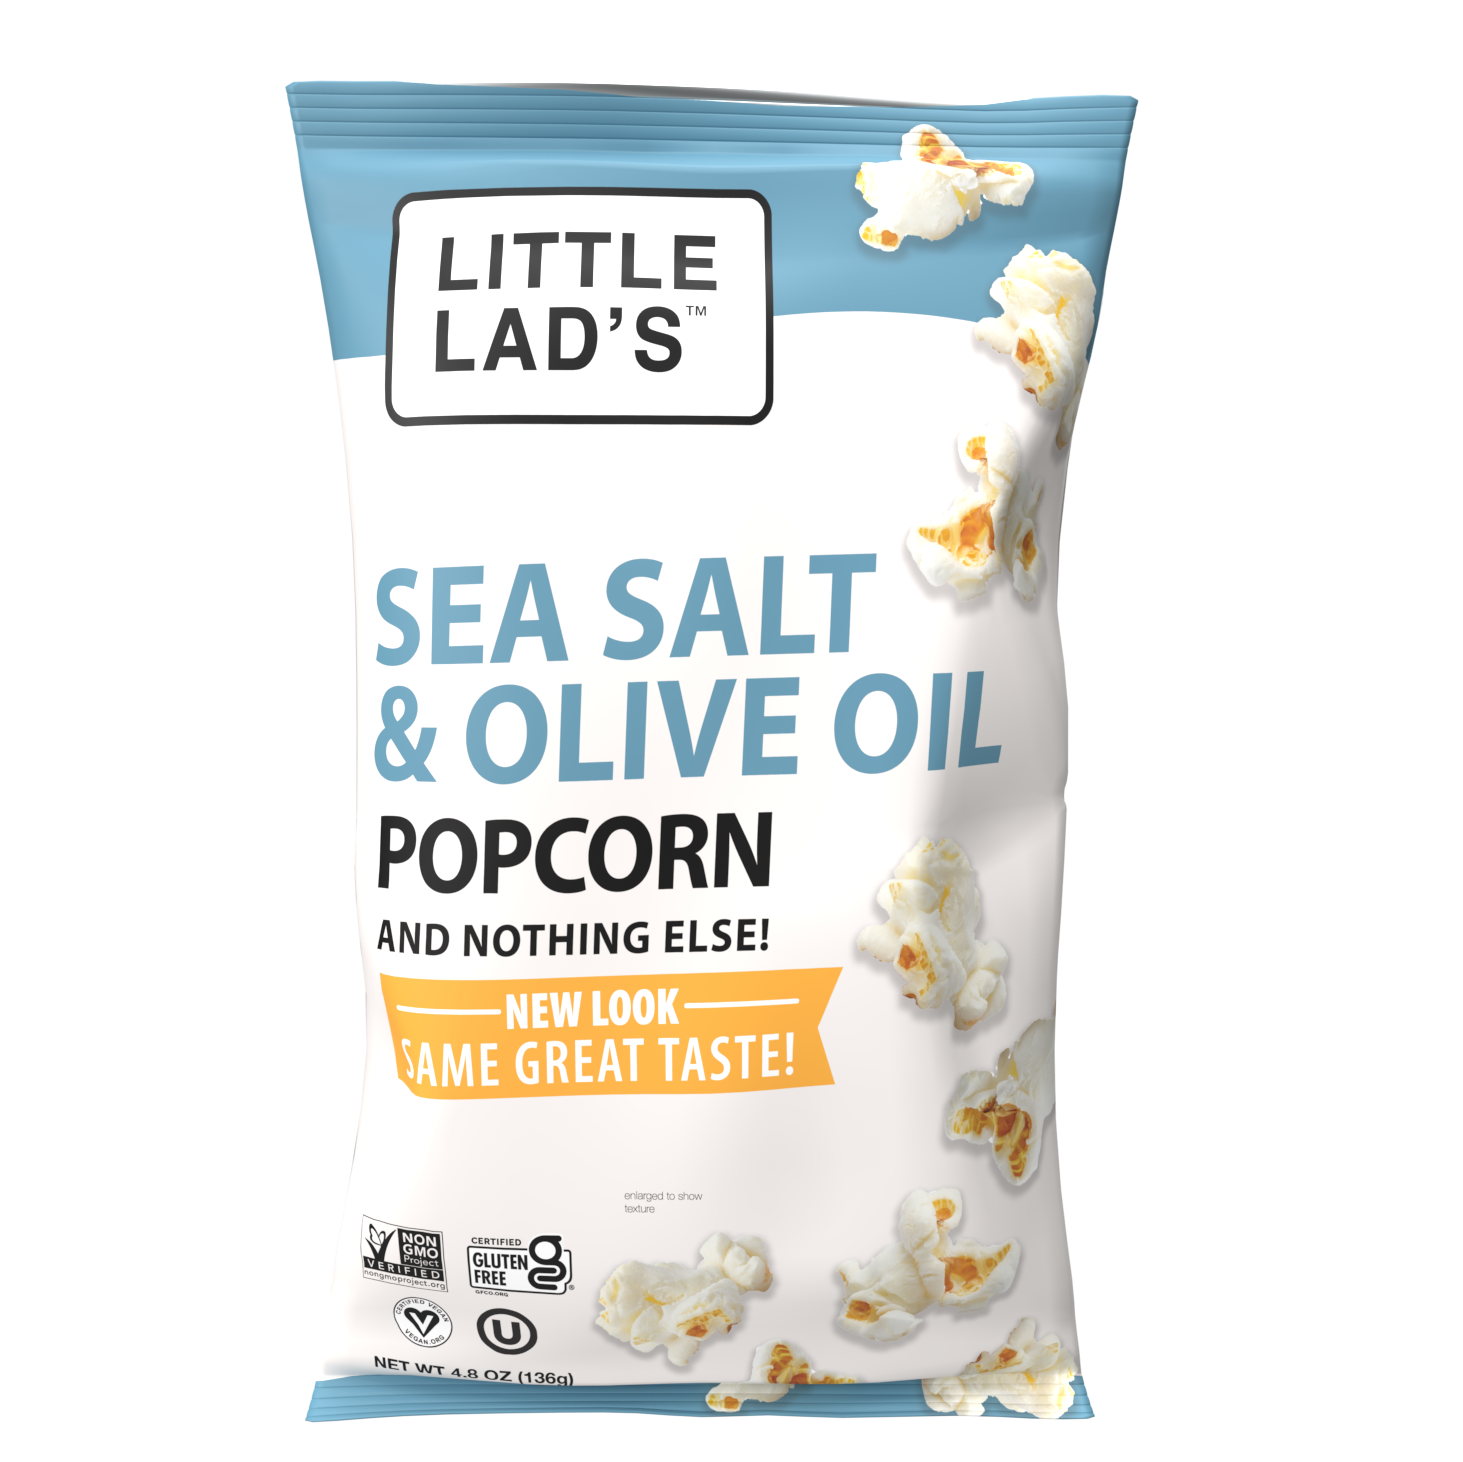 Little Lad's Sea Salt & Olive Oil Popcorn (4.8 oz Bag)